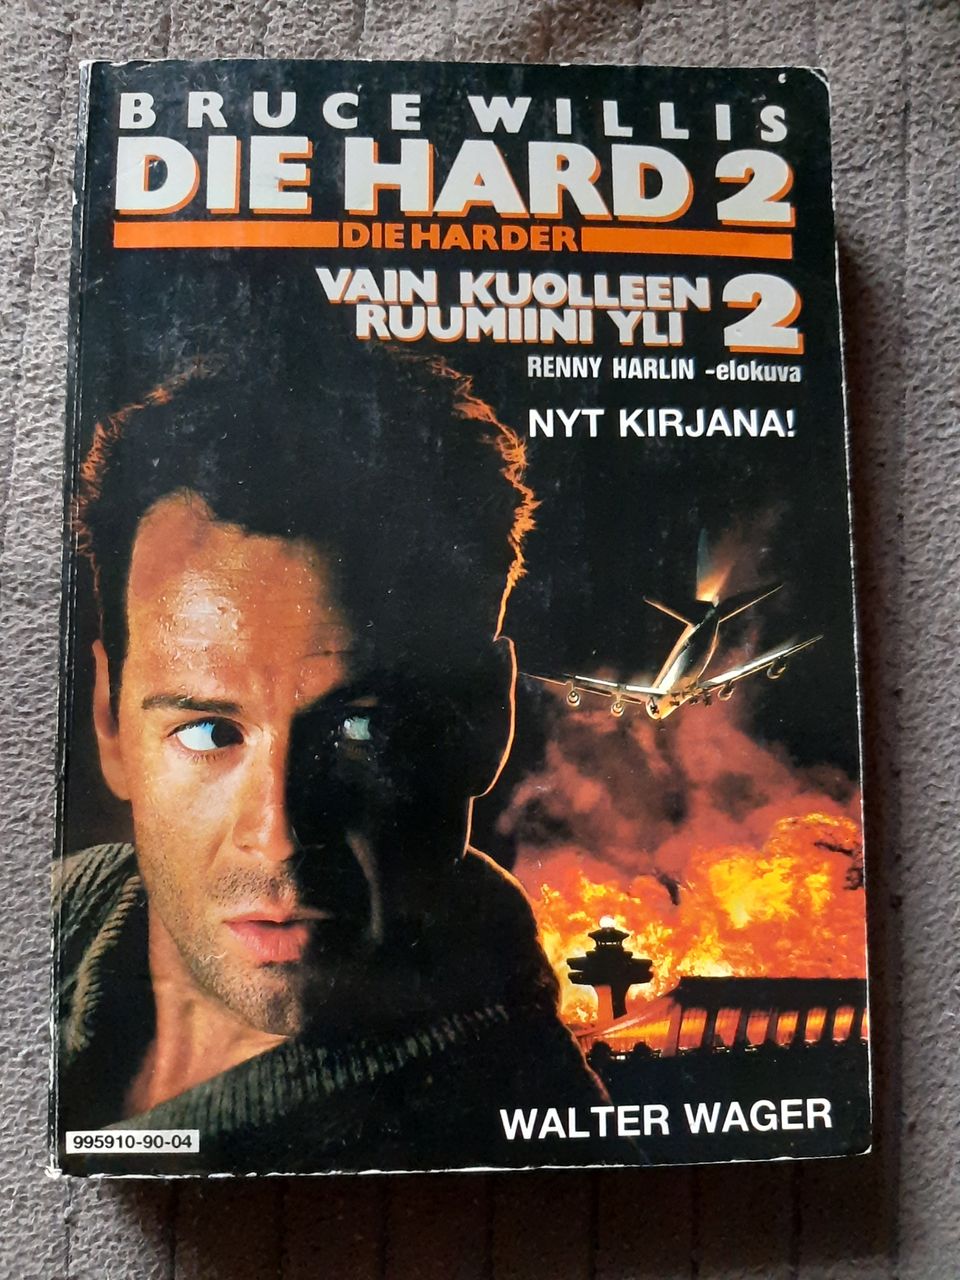 Die Hard - Vain kuolleen ruumini yli 2 -kirja